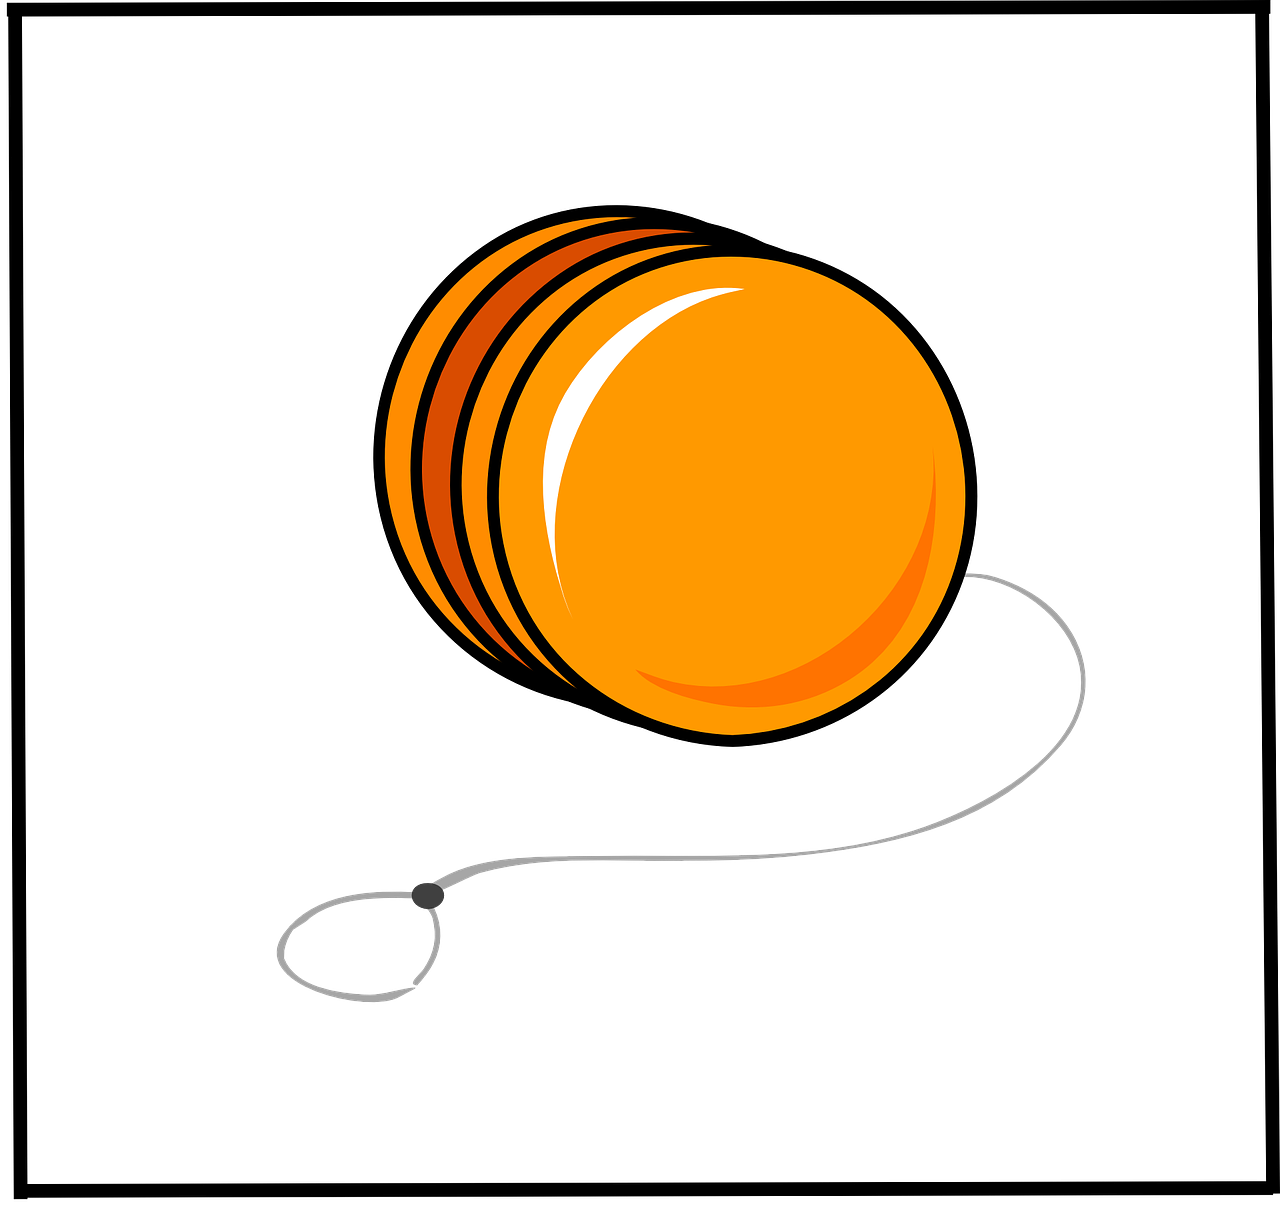 yo-yo toy orange free photo